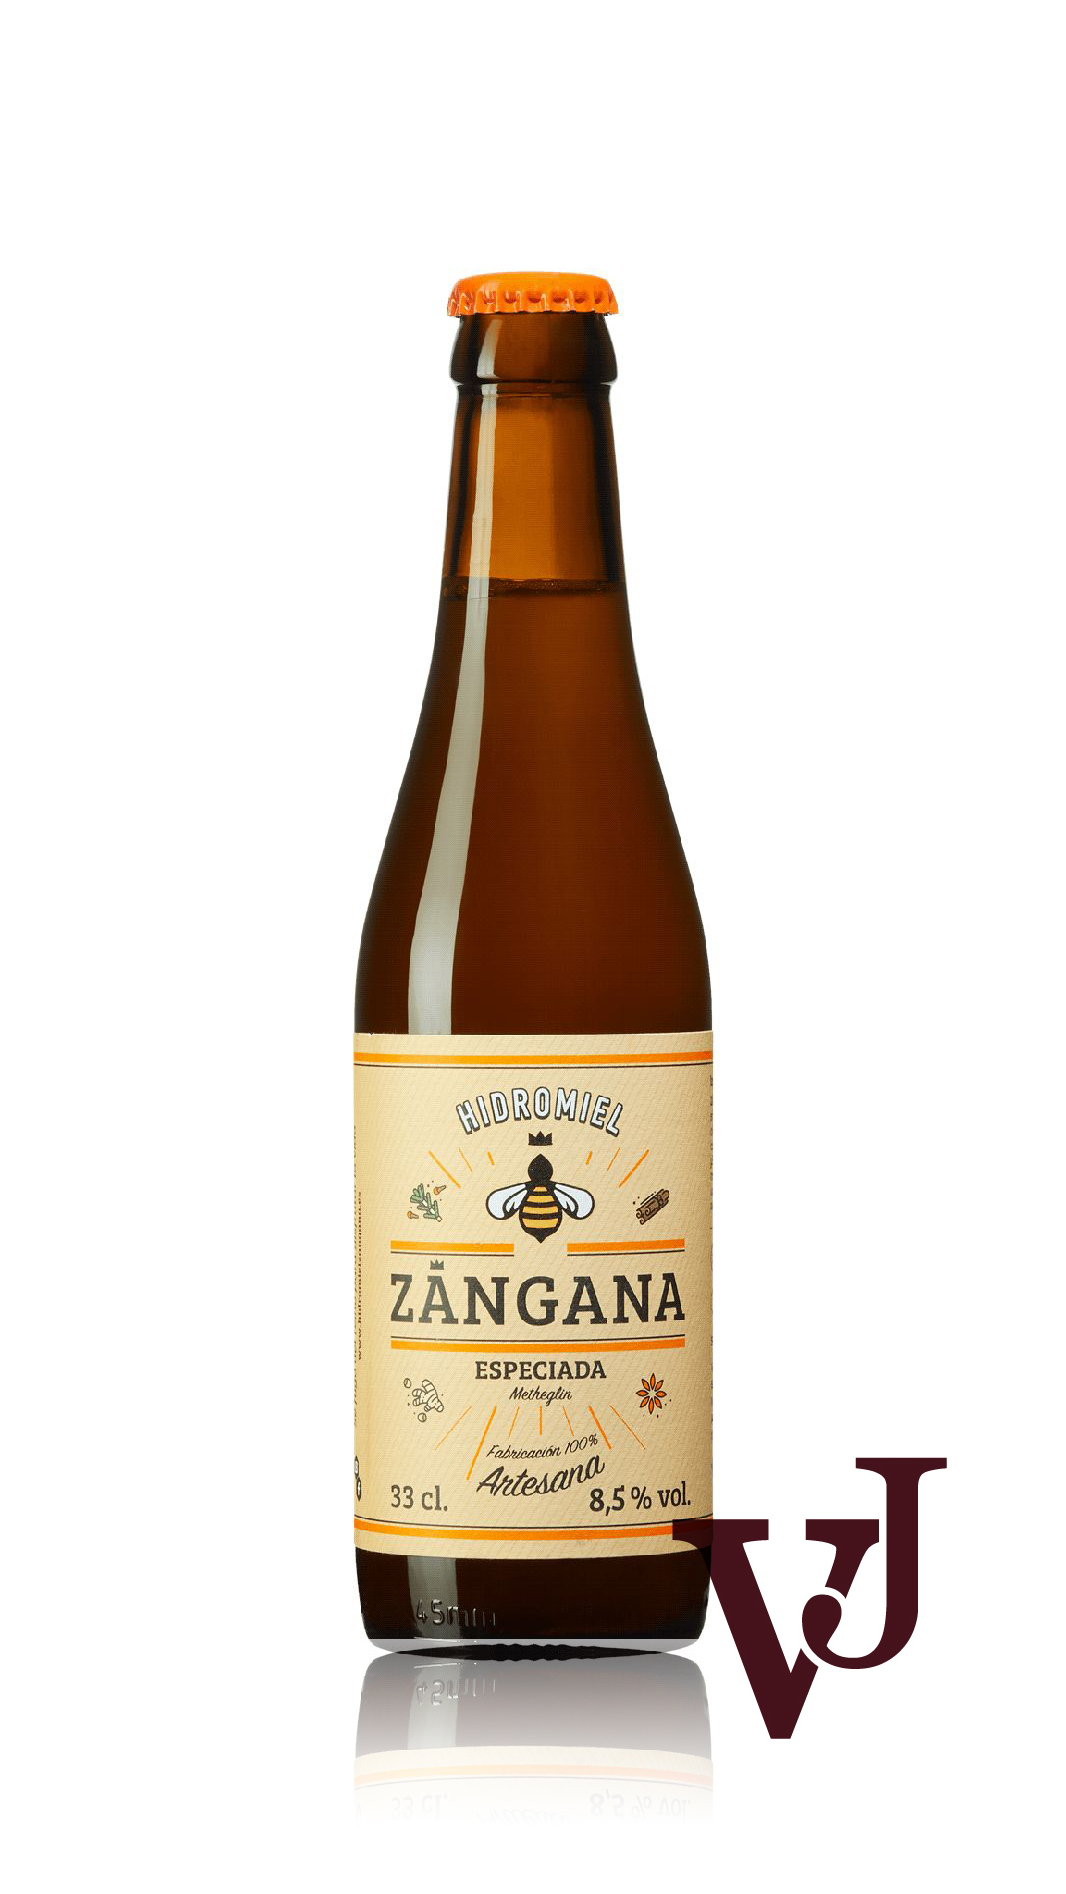 Övrigt Vin - Zangana Especiada Asturian Food & Drinks artikel nummer 1310202 från producenten SMA Asturian Food & Drinks S.L.Visste du att...Mjöd